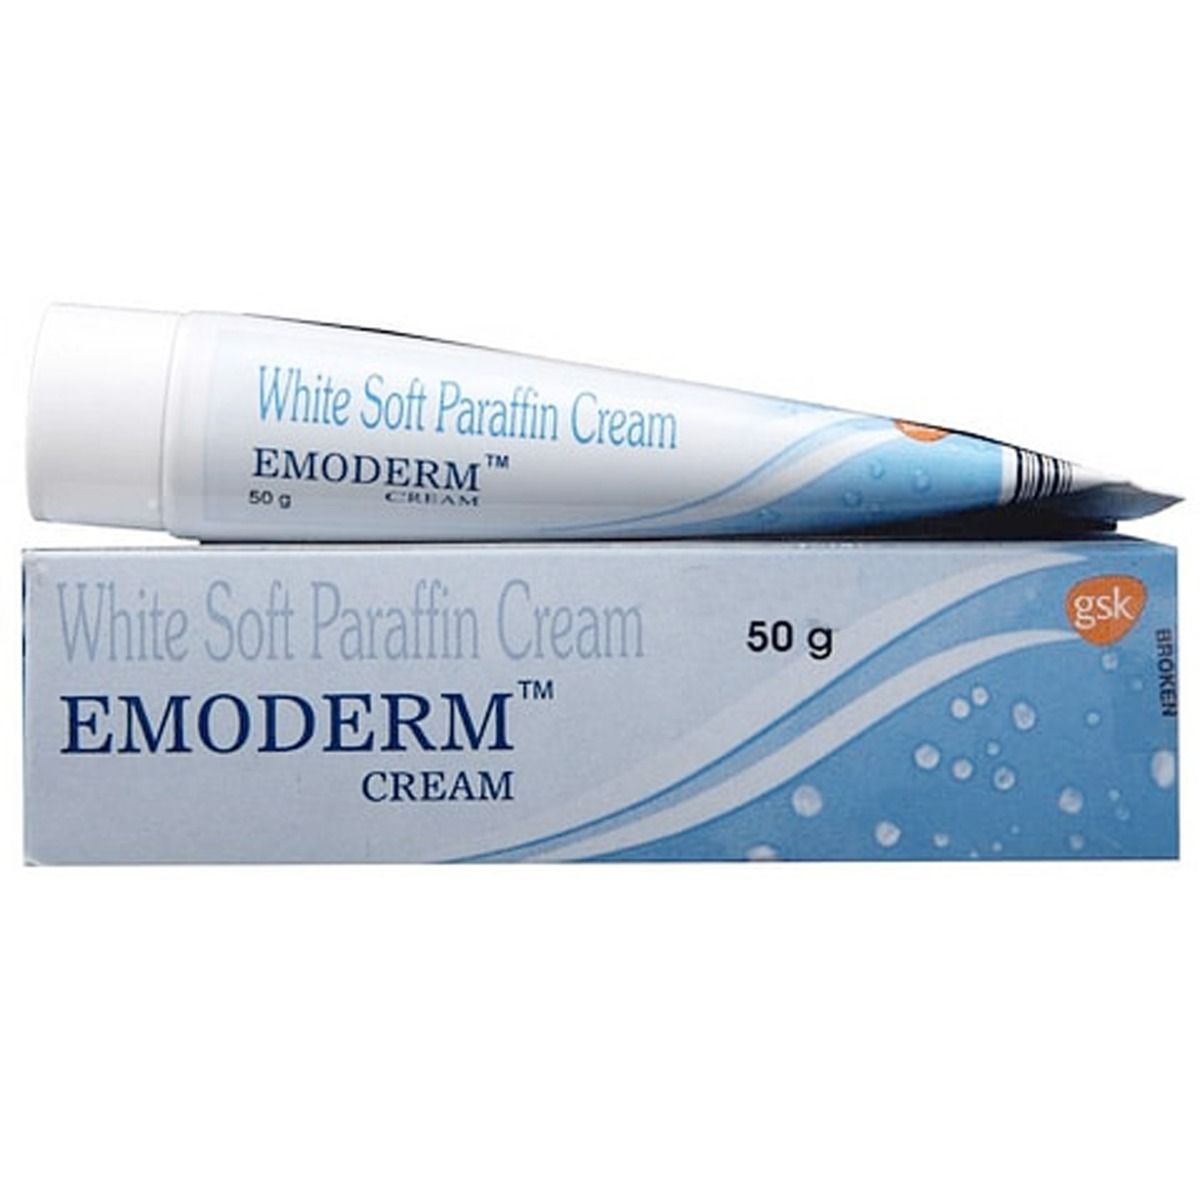 Emoderm Cream 50 gm, Pack of 1 CREAM